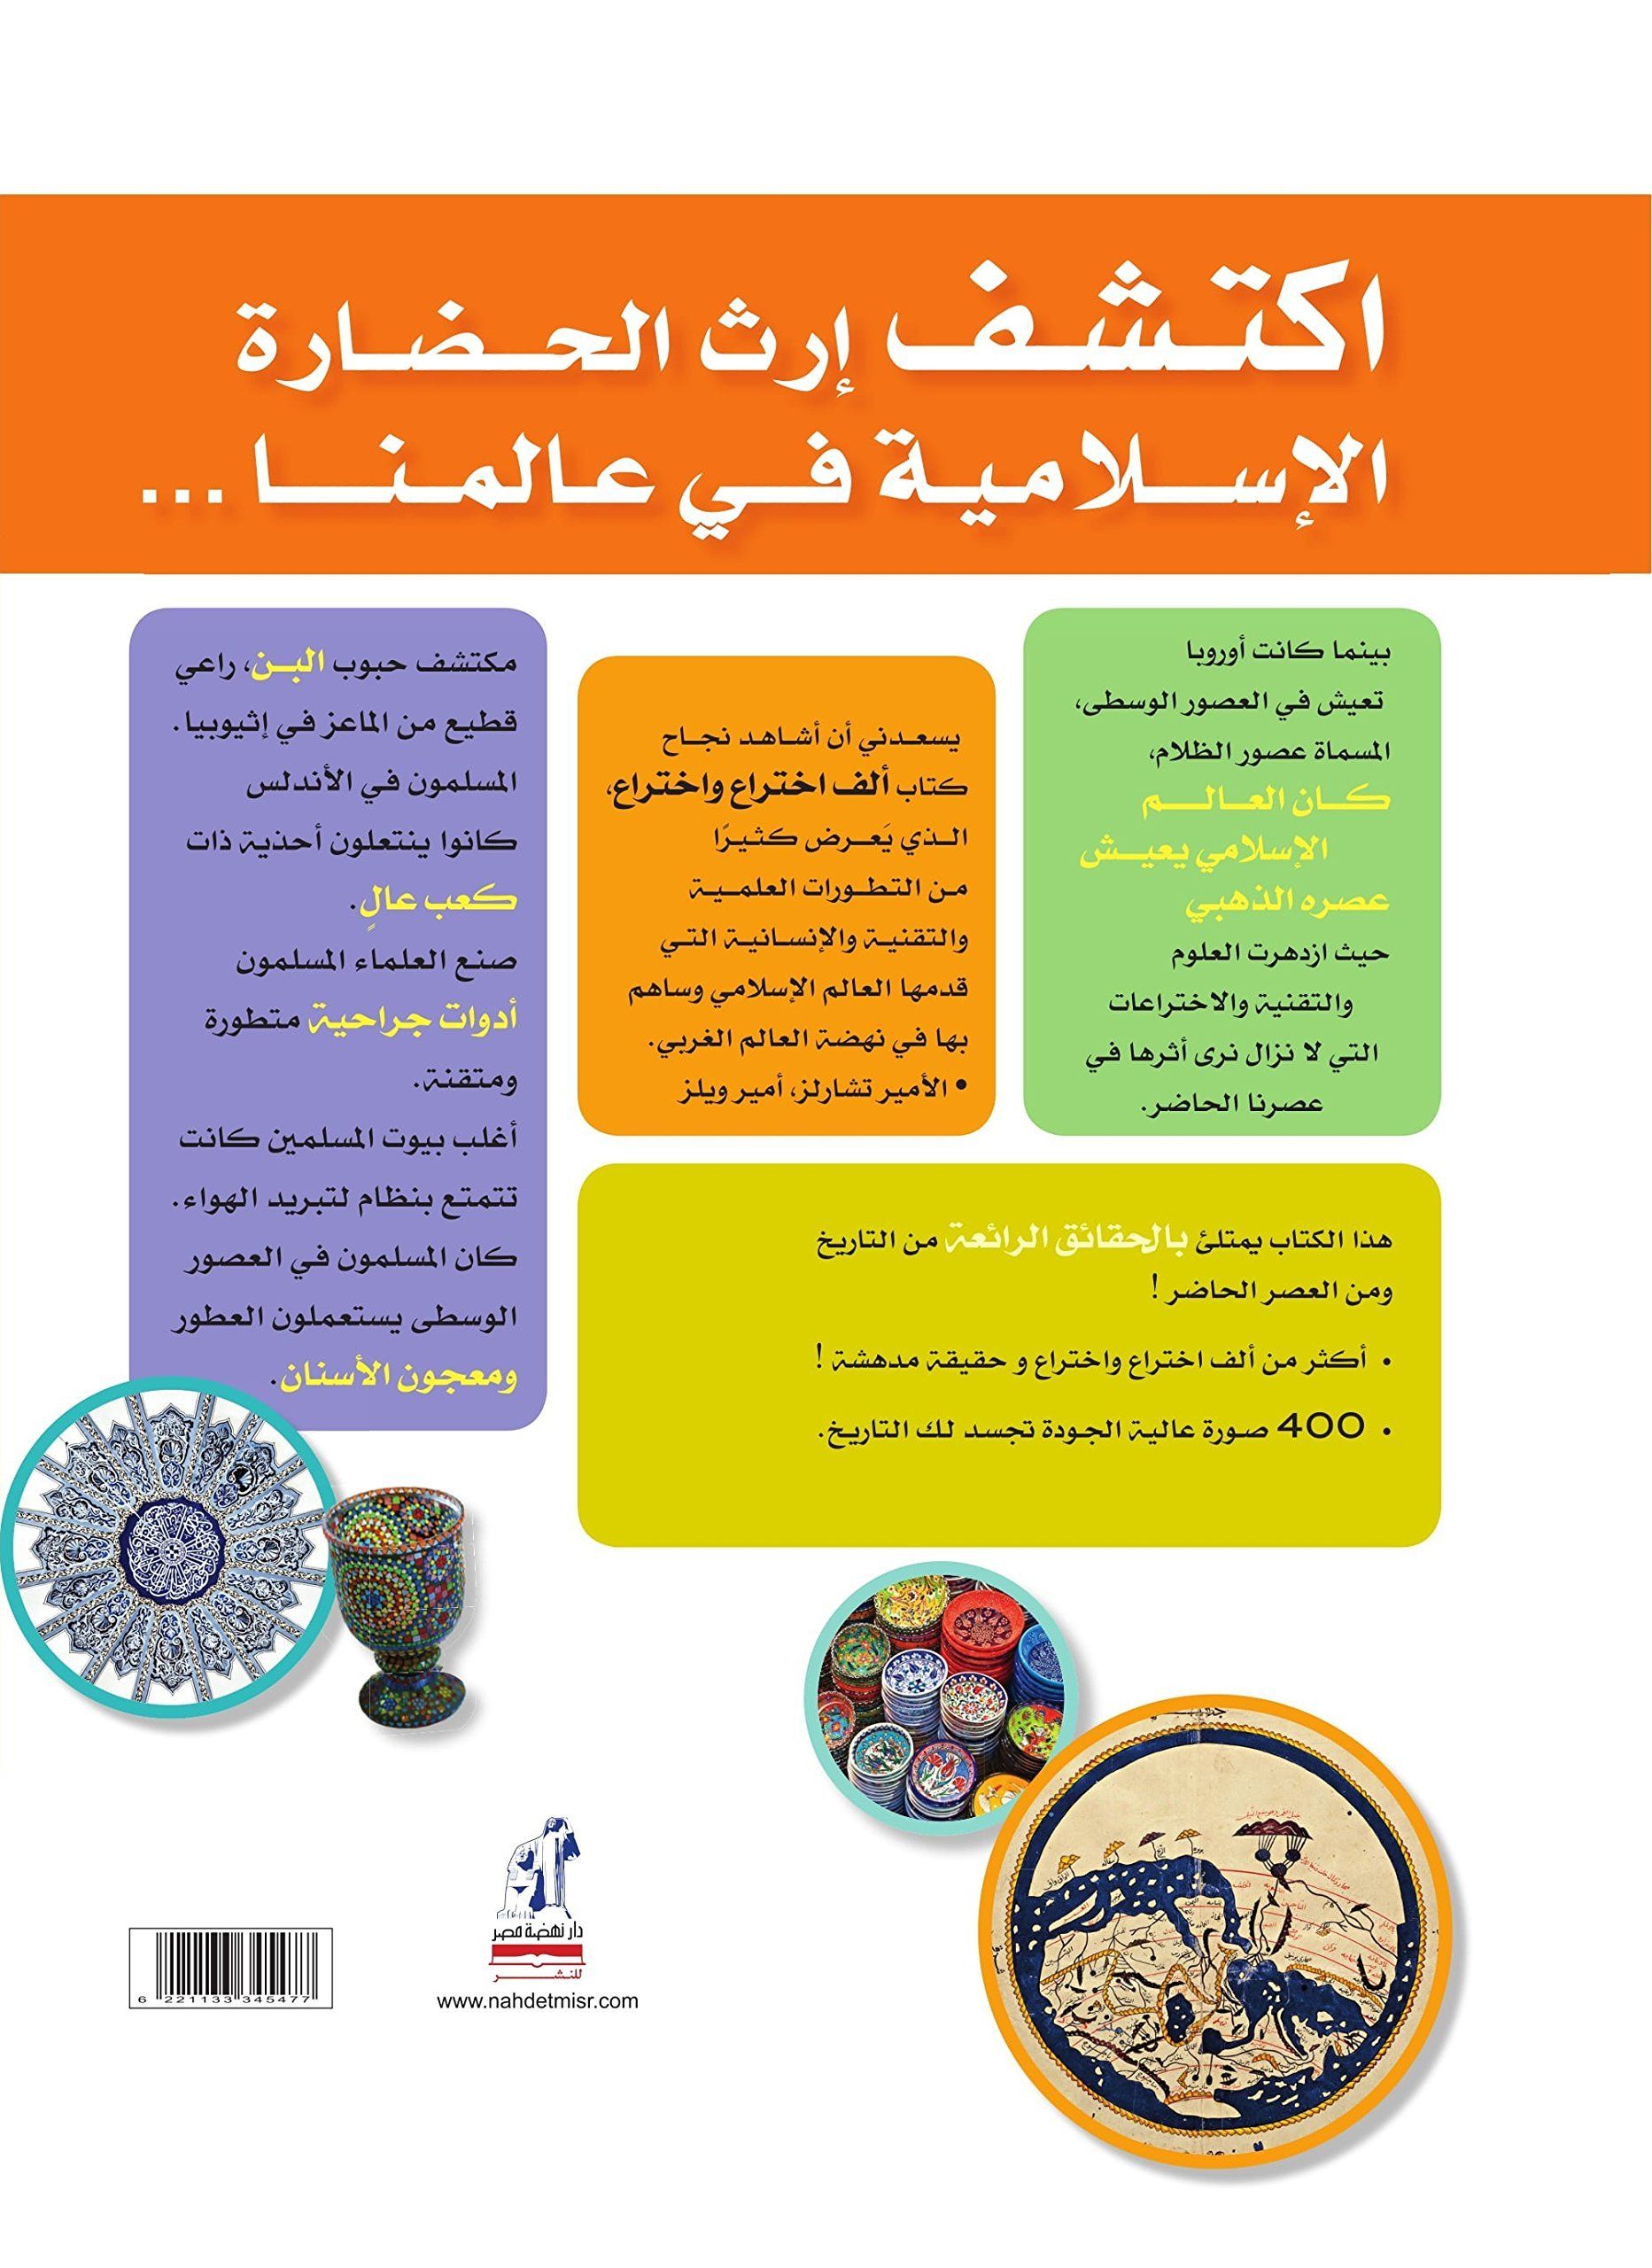 موسوعة 1001 إختراع وحقيقة مدهشة عن الحضارة الإسلامية كتب أطفال ناشيونال جيوغرافيك